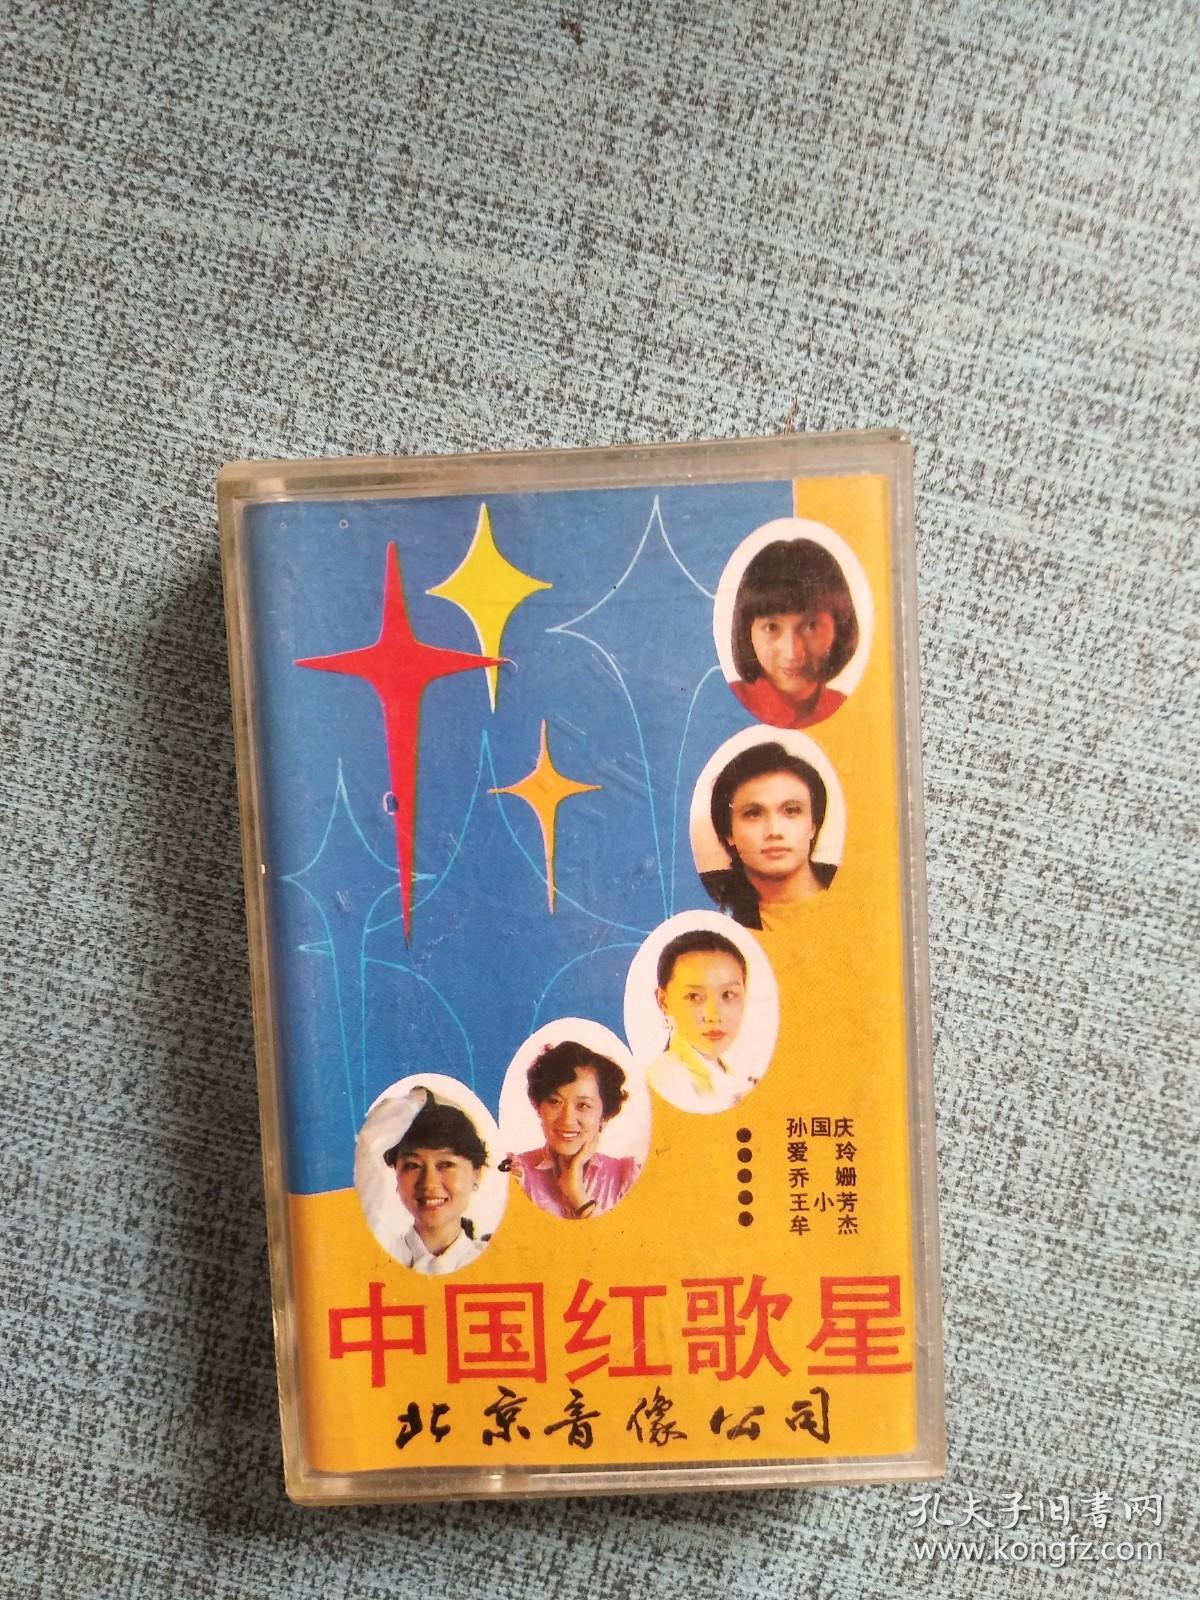 中国红歌星 磁带